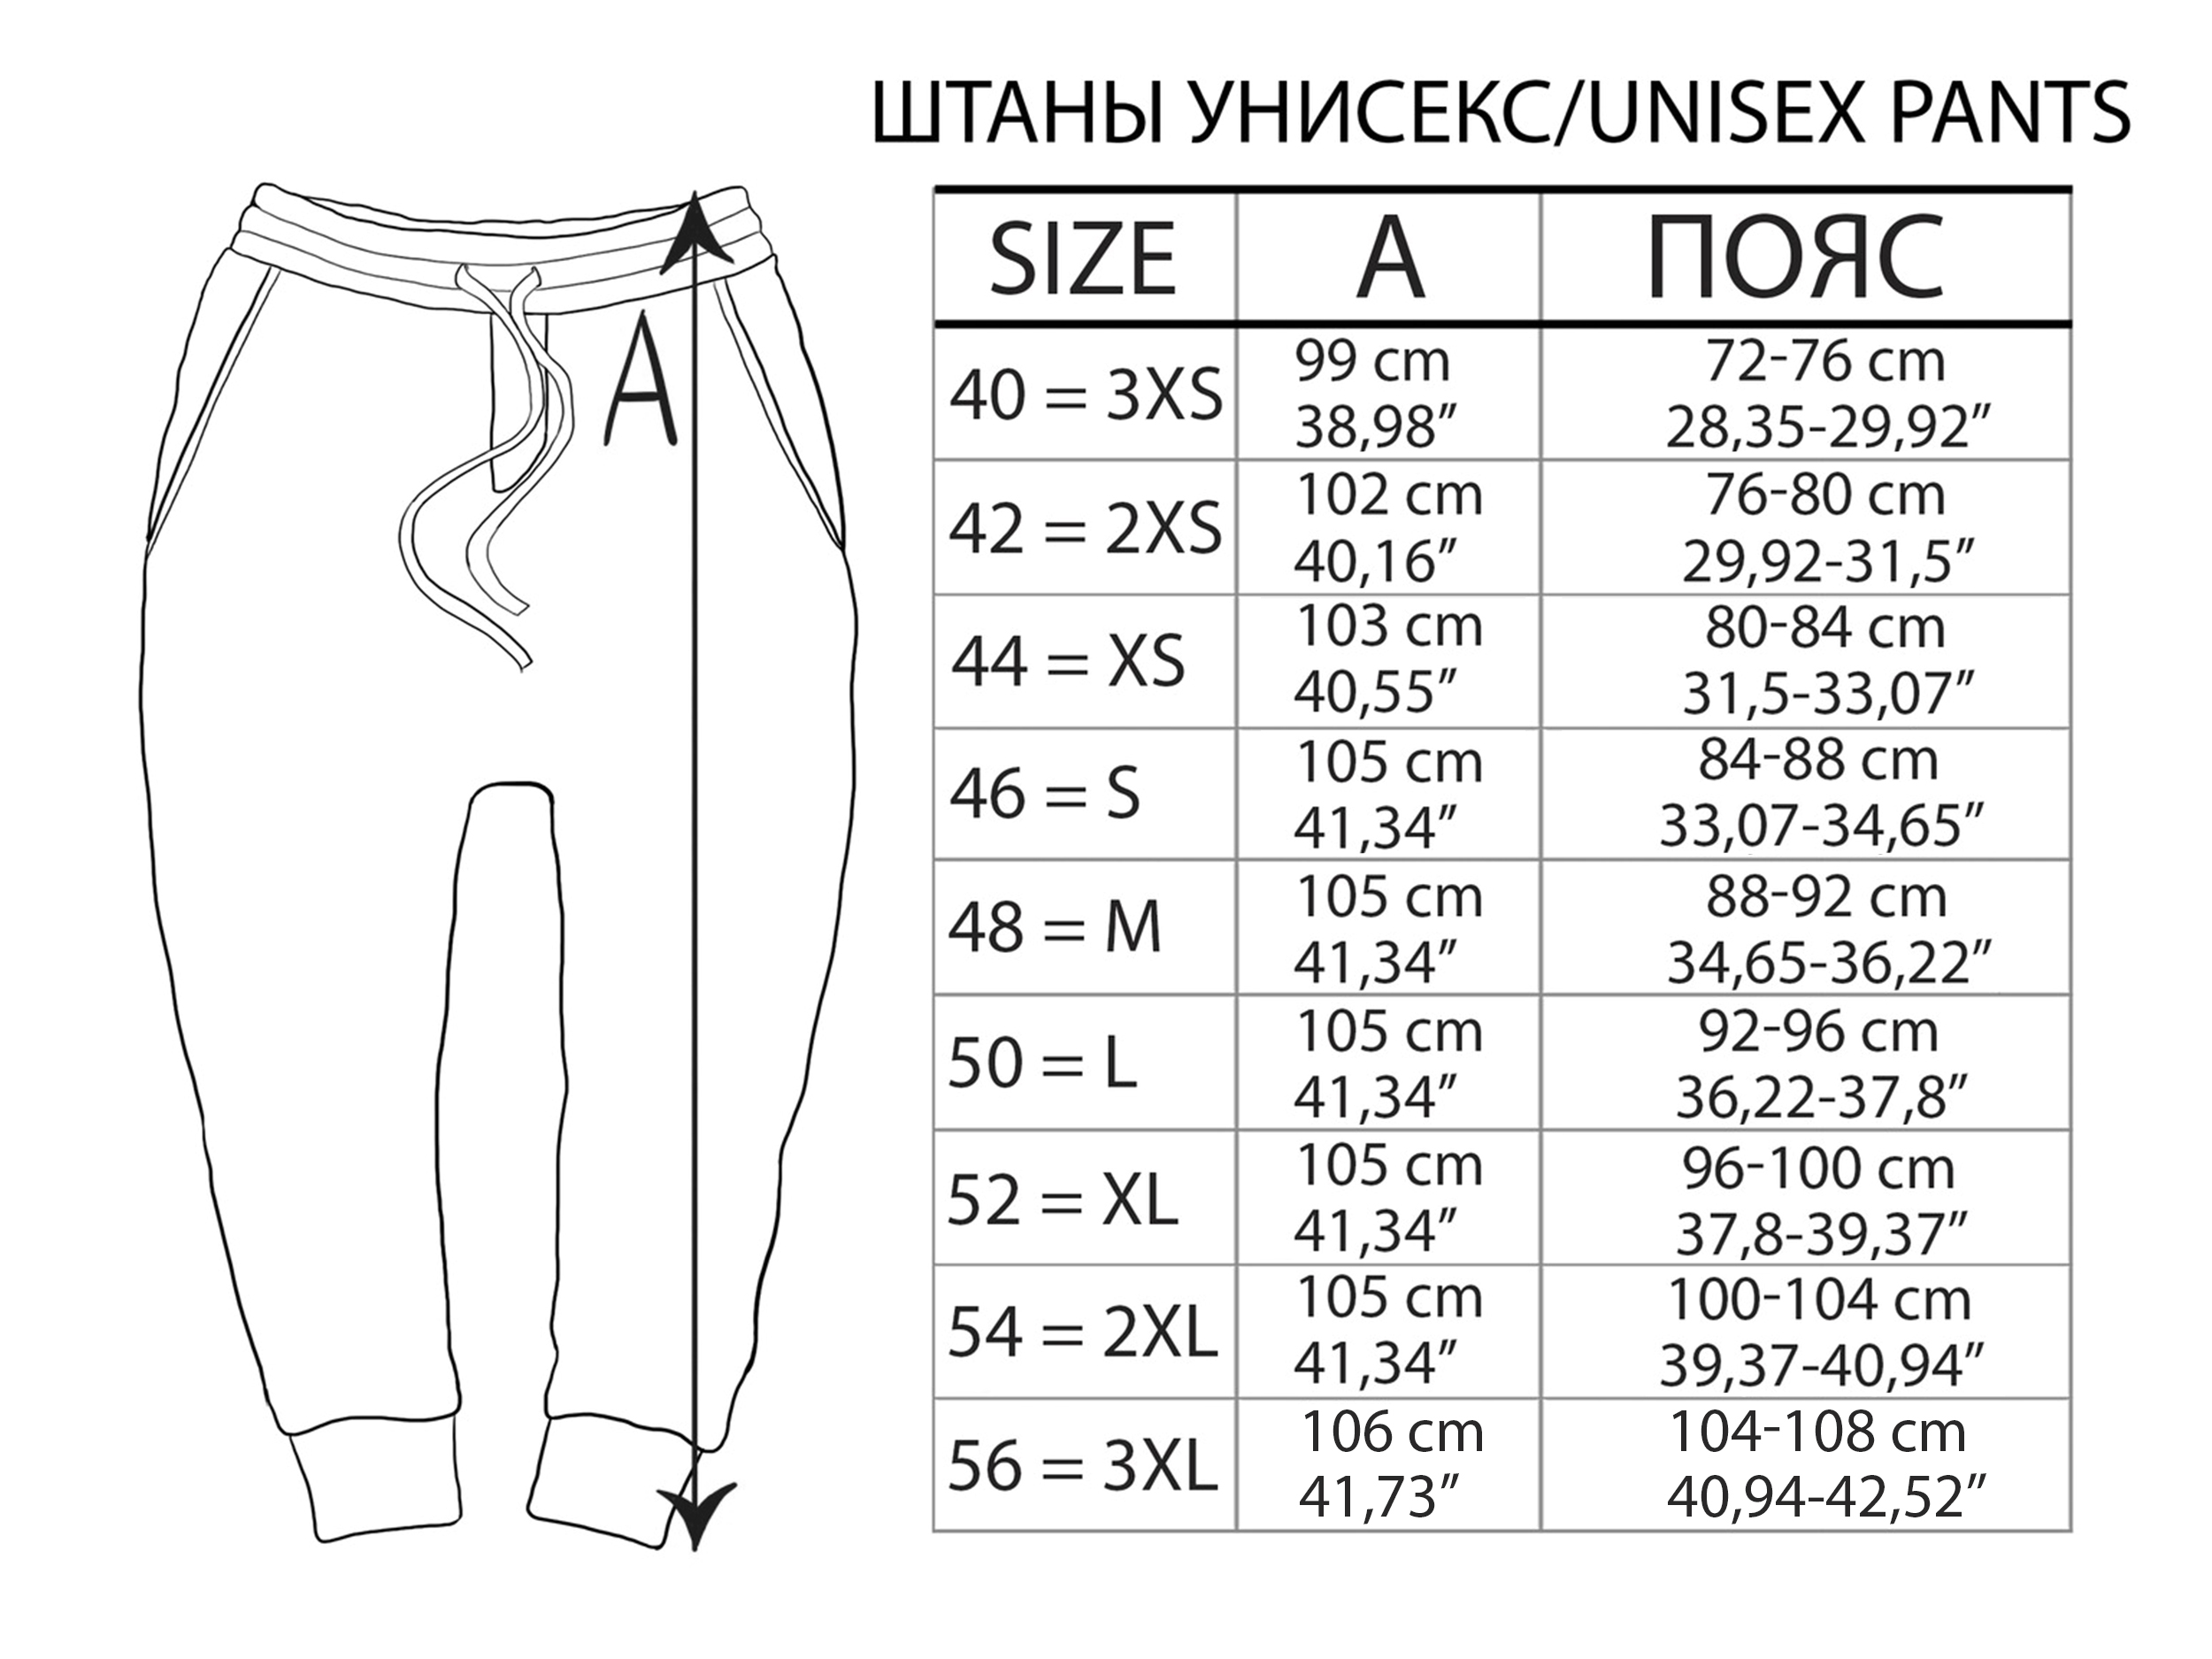 Мужские размеры брюк россия. Размеры штанов мужских 42 размер. Размеры мужских брюк в сантиметрах. Размеры штанов на рост. Размеры штанов в см.